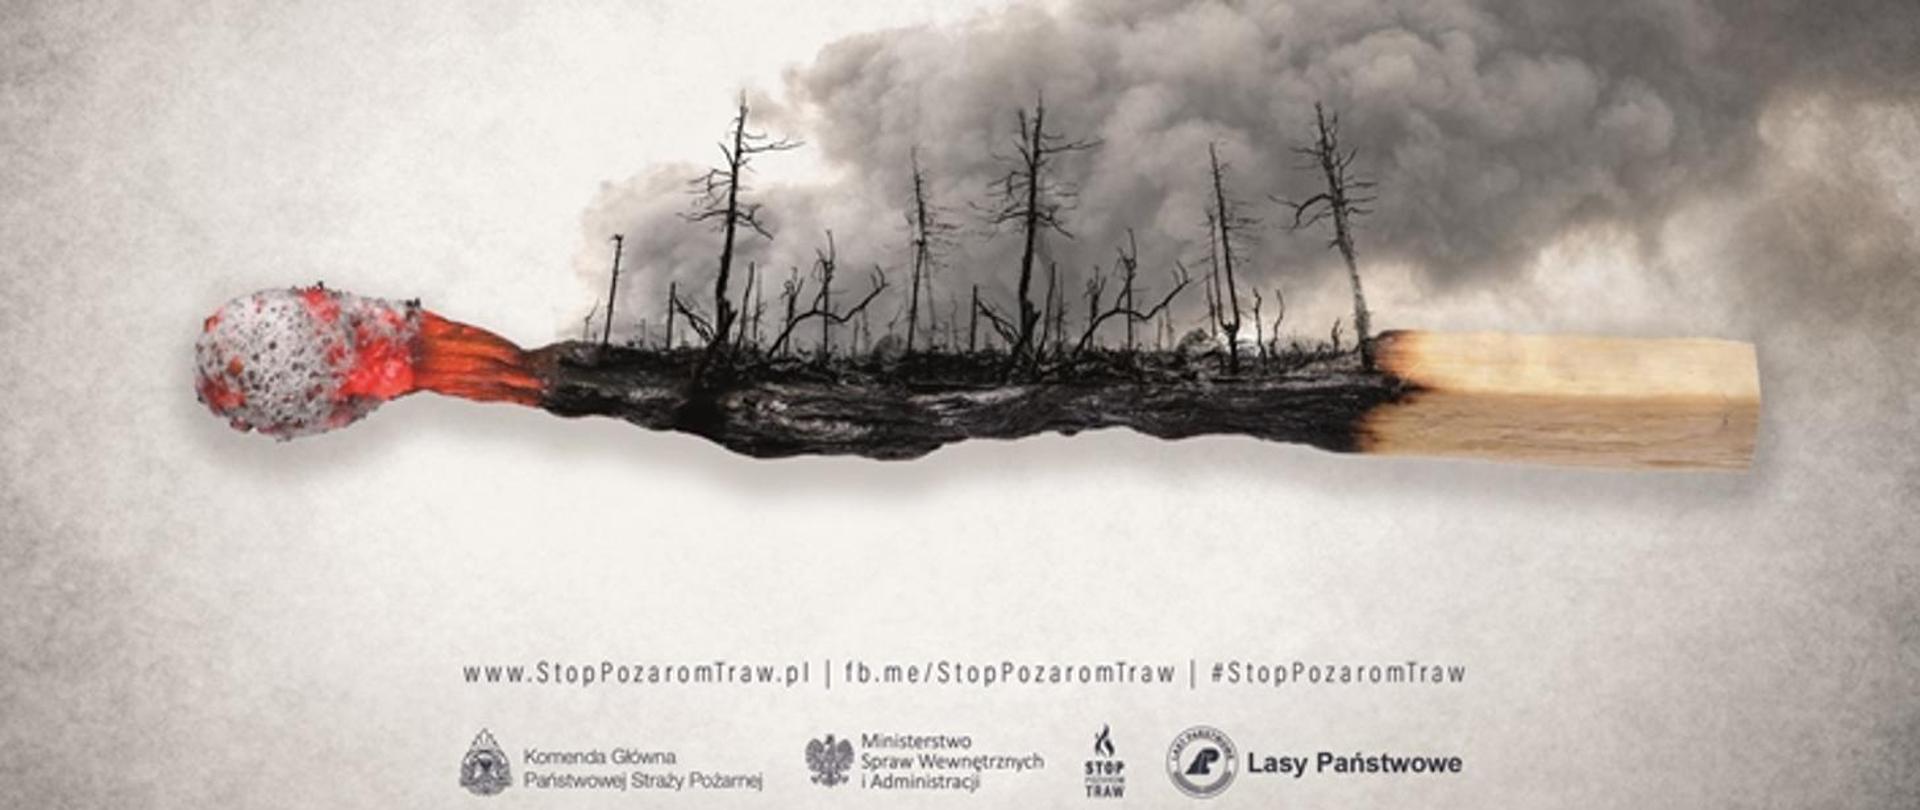 Obraz przedstawia plakat kampanii STOP pożarom traw